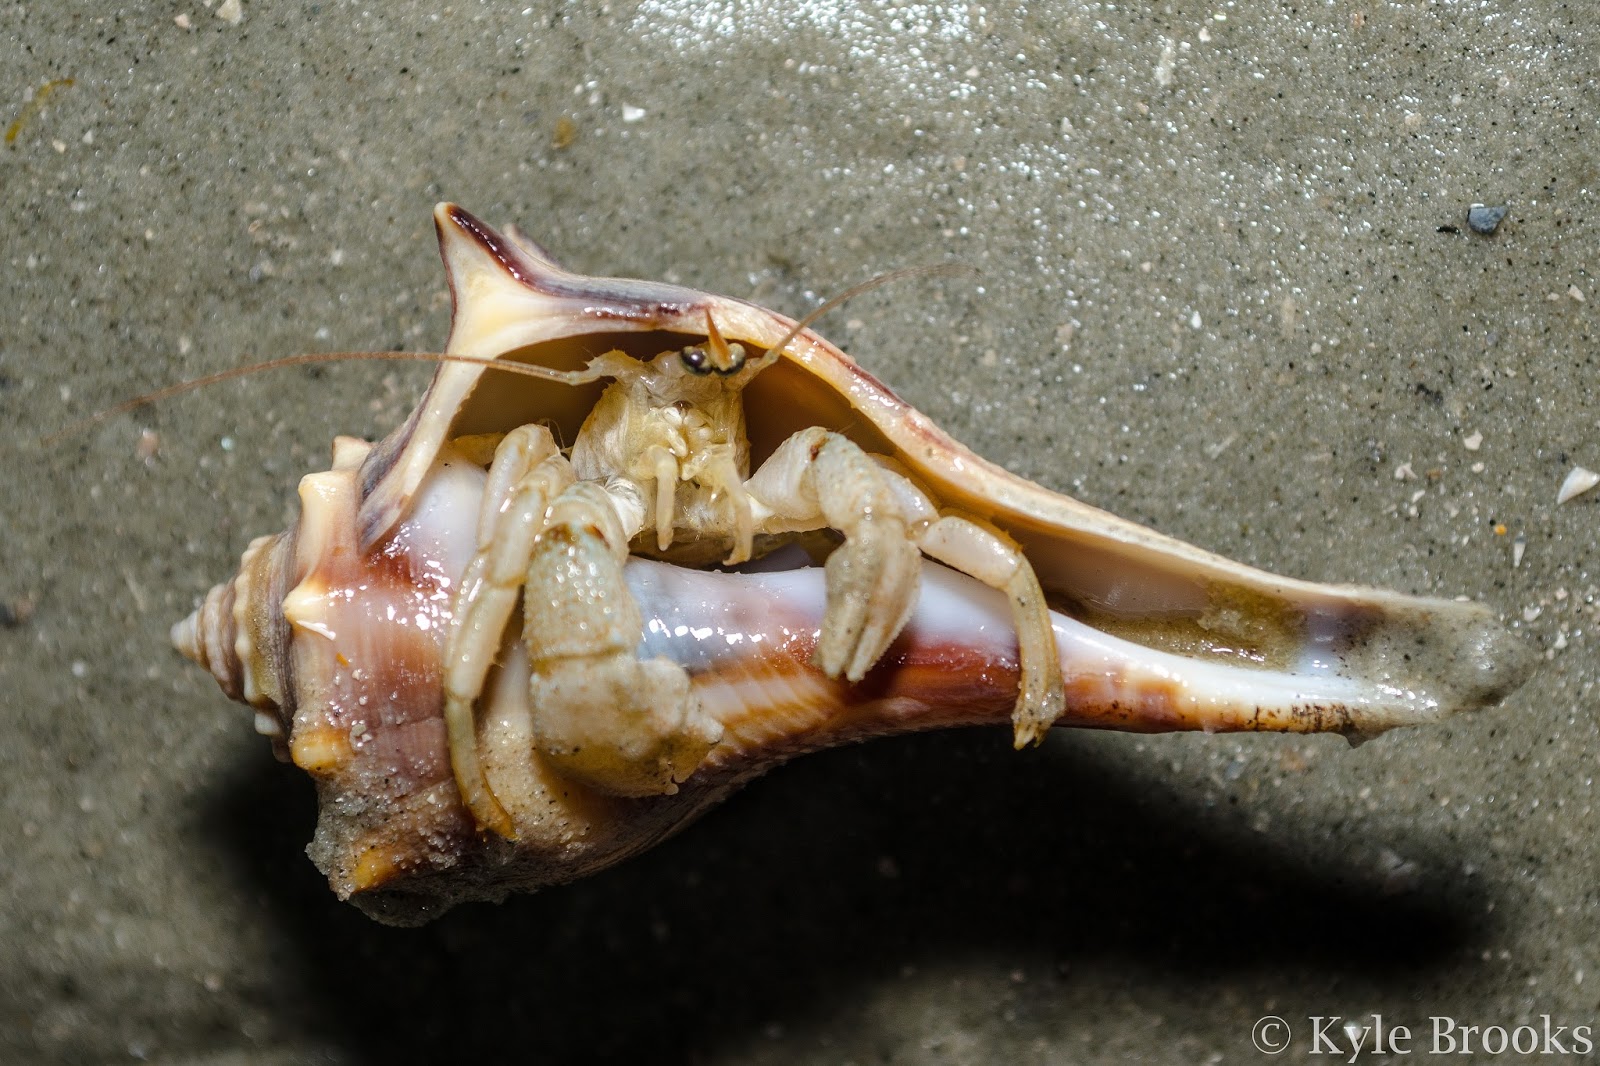 Hermit Crab 